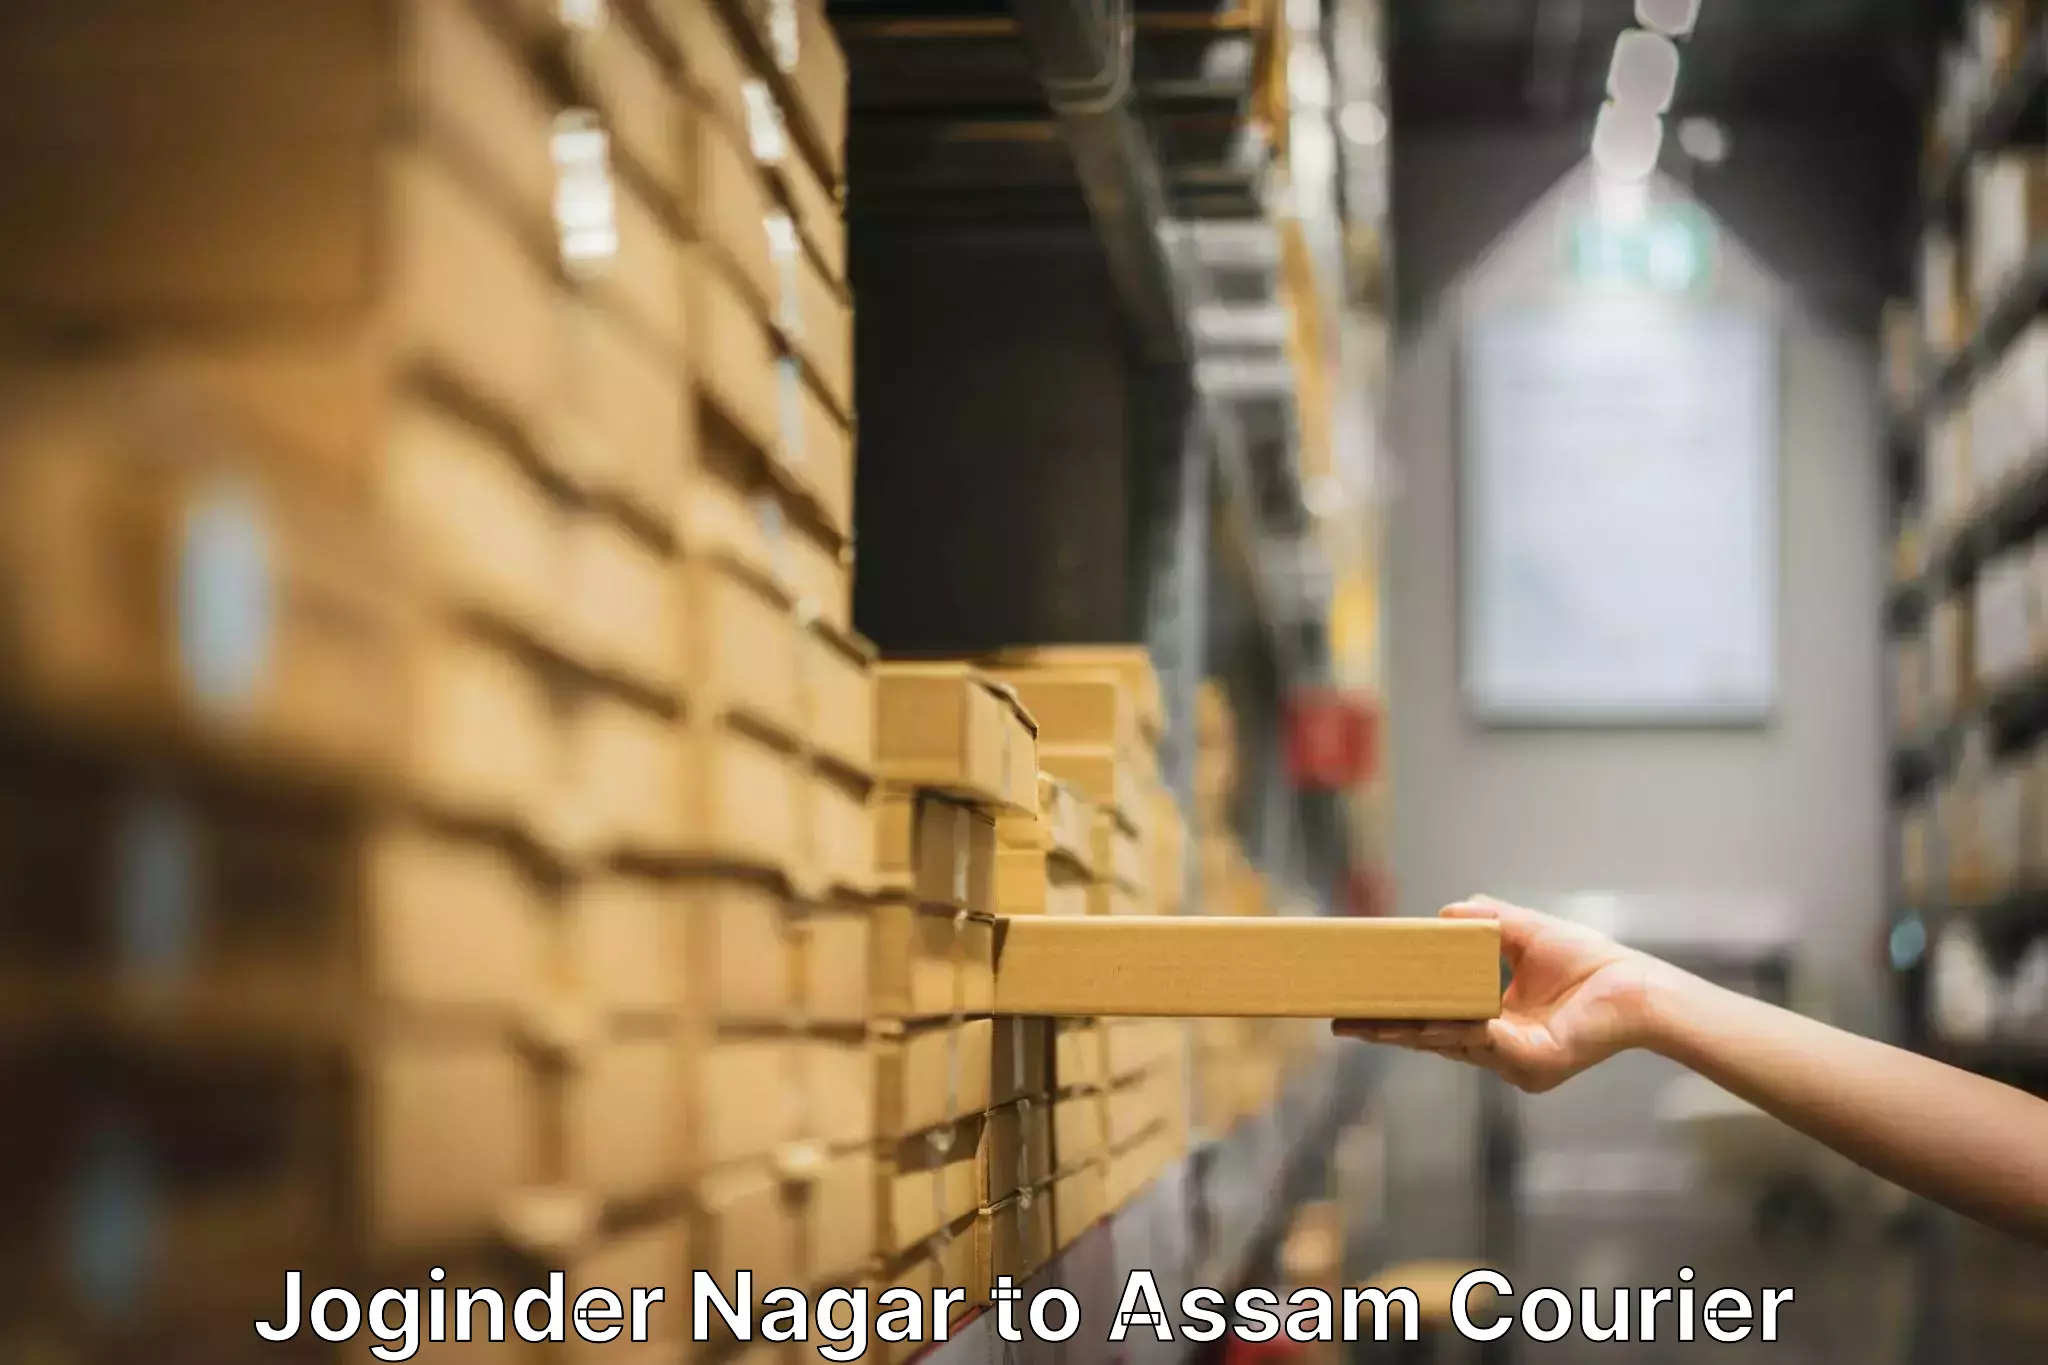 Skilled movers Joginder Nagar to Lala Assam